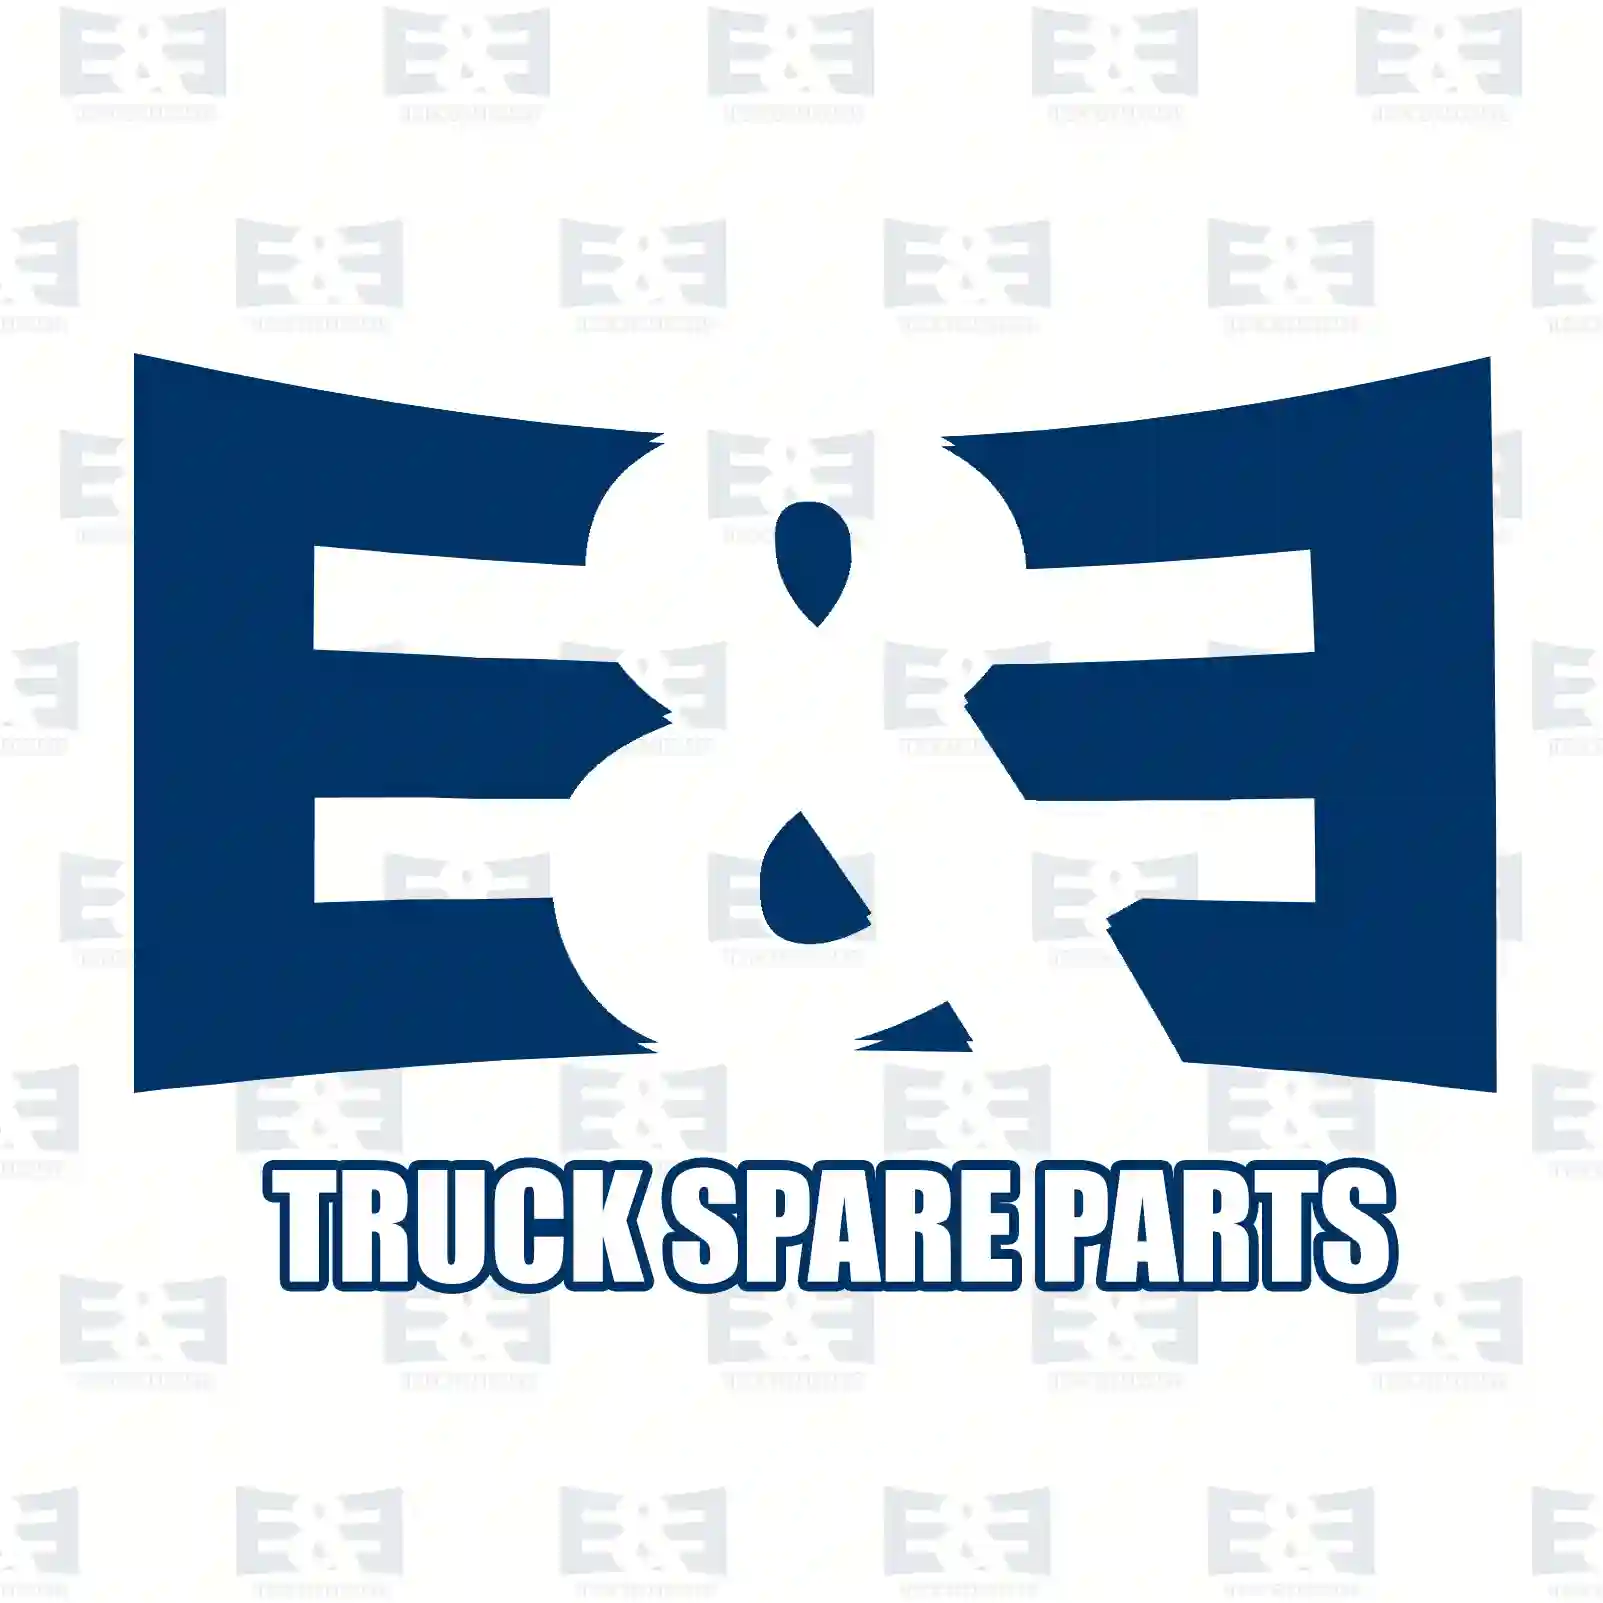 Engine bracket, front, right, 2E2207202, 8138232 ||  2E2207202 E&E Truck Spare Parts | Truck Spare Parts, Auotomotive Spare Parts Engine bracket, front, right, 2E2207202, 8138232 ||  2E2207202 E&E Truck Spare Parts | Truck Spare Parts, Auotomotive Spare Parts